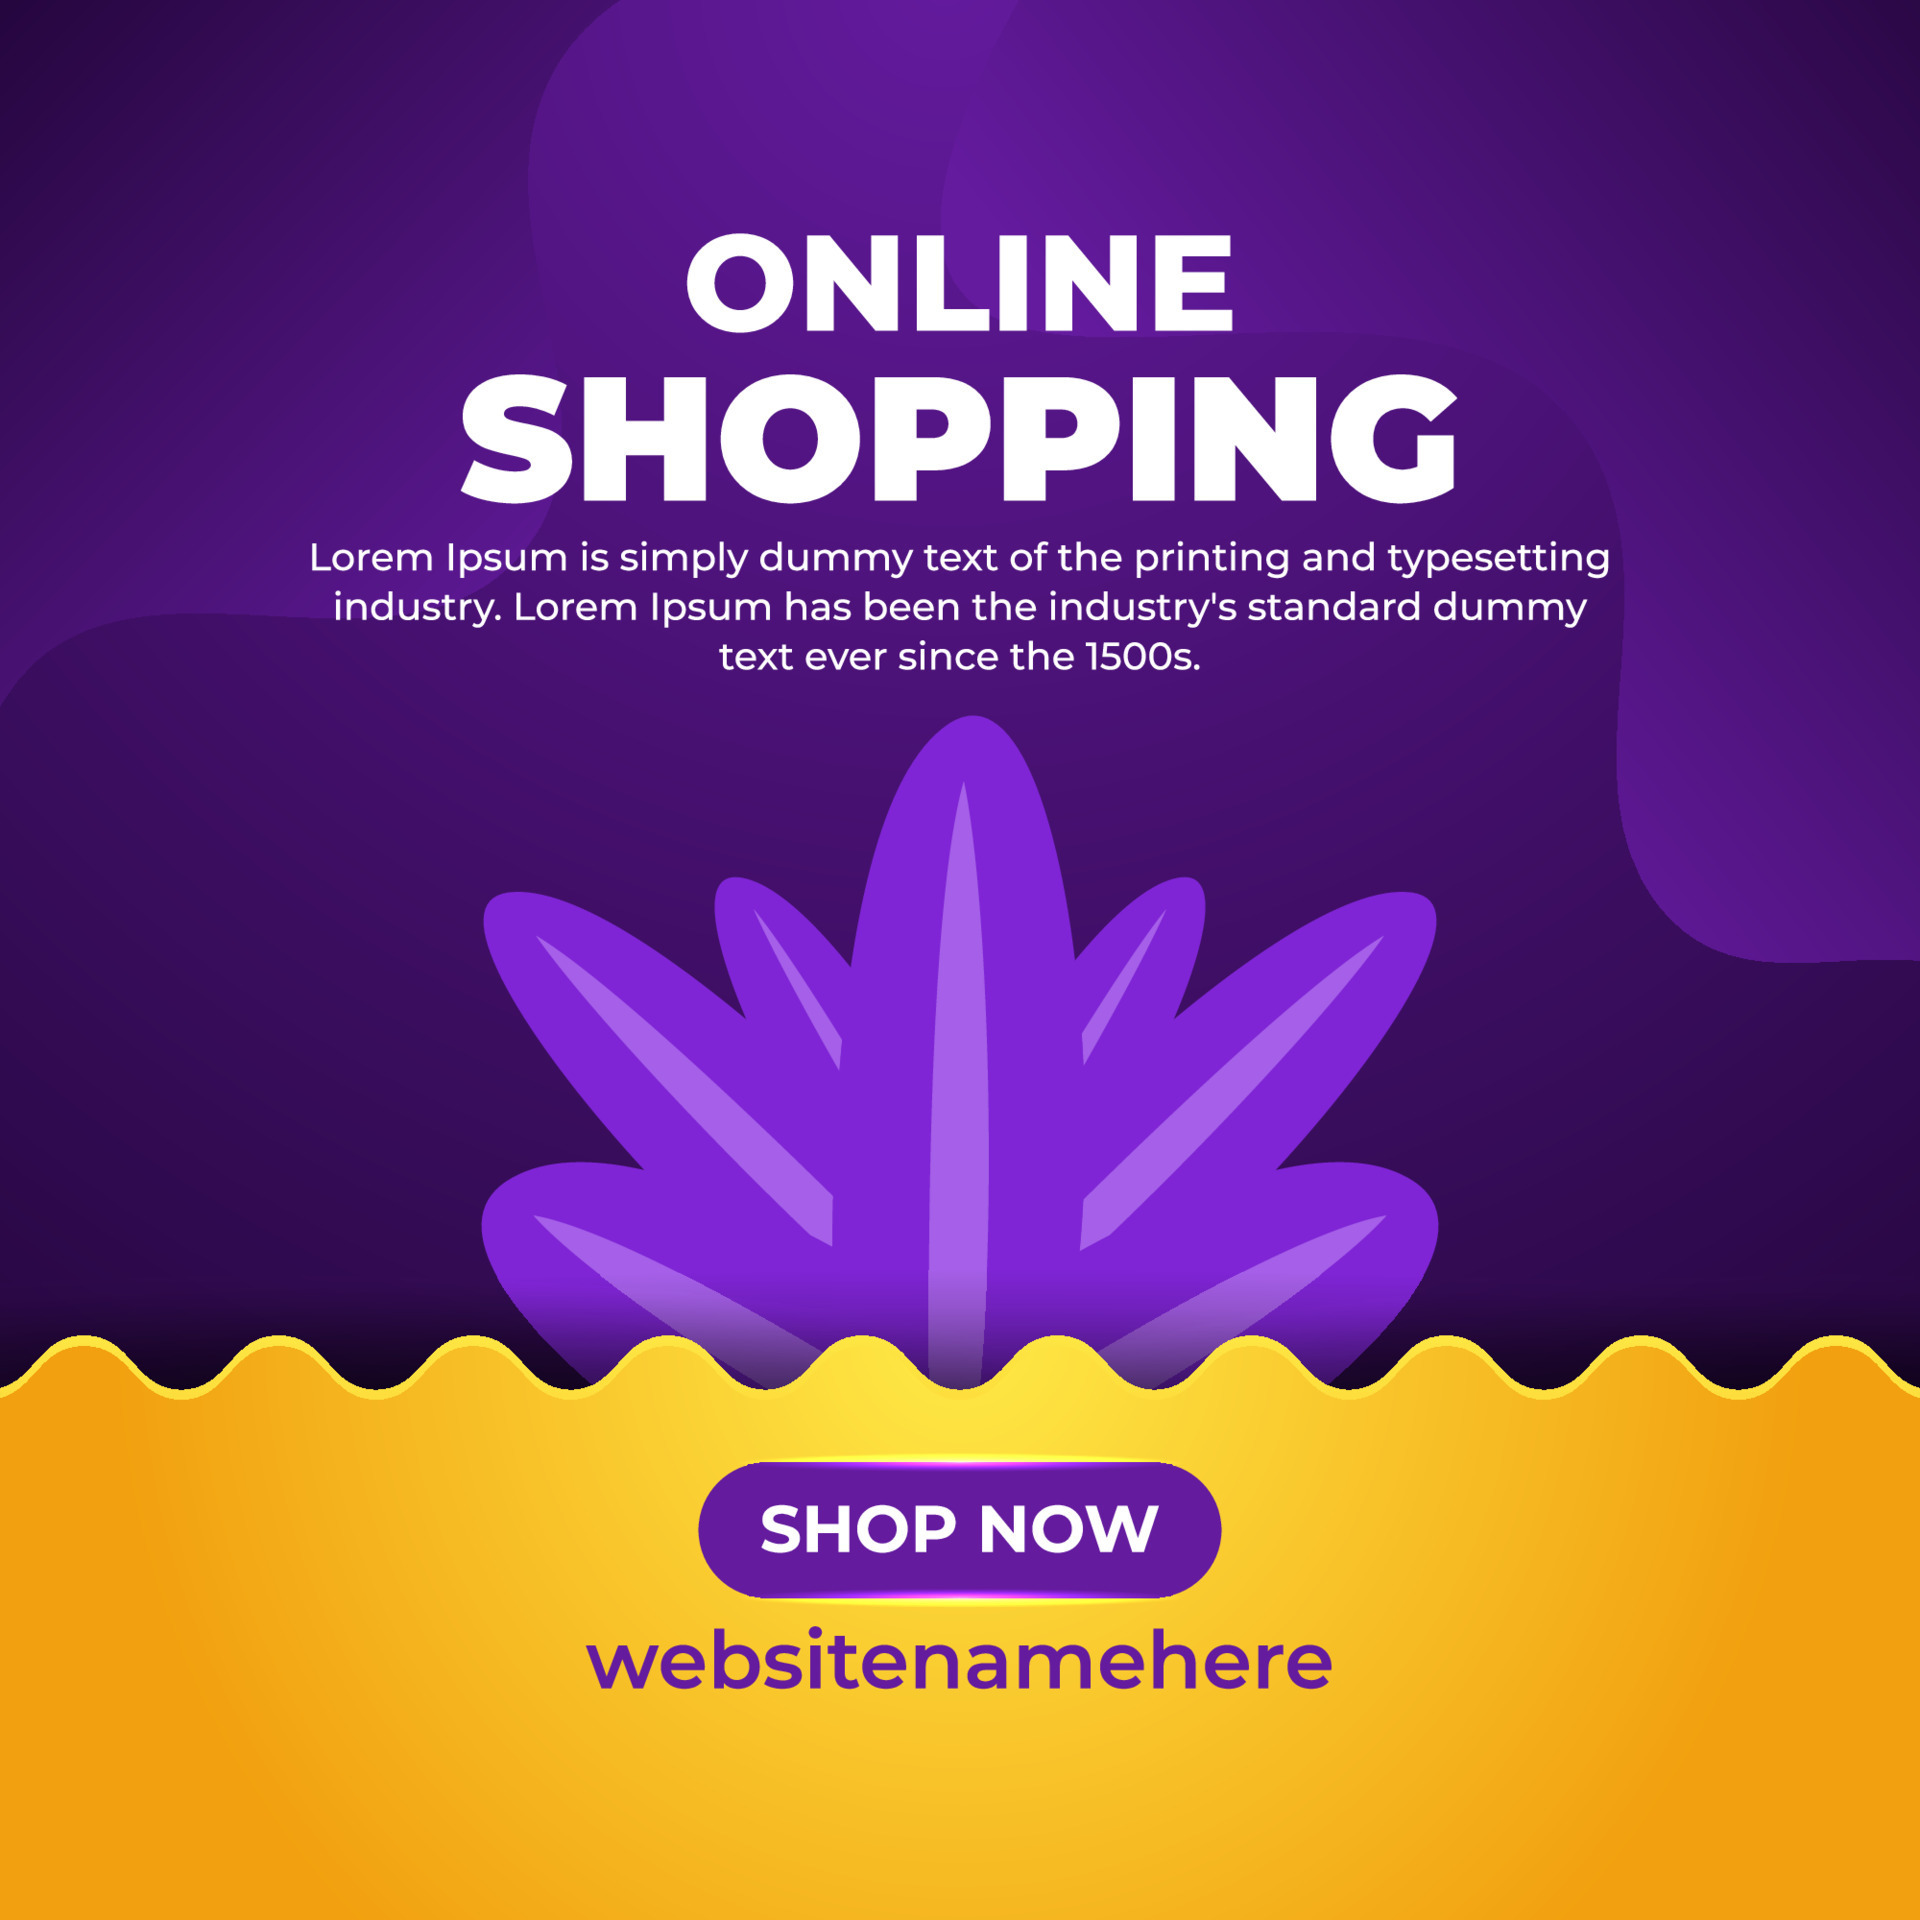 Bạn đang tìm kiếm các sản phẩm giảm giá khi mua sắm trực tuyến? Hãy xem các banner quảng cáo giảm giá tại các trang web thương mại điện tử để tìm các chương trình ưu đãi hấp dẫn. Xem hình ảnh liên quan để tìm kiếm thêm nguồn cảm hứng cho mùa mua sắm của bạn.